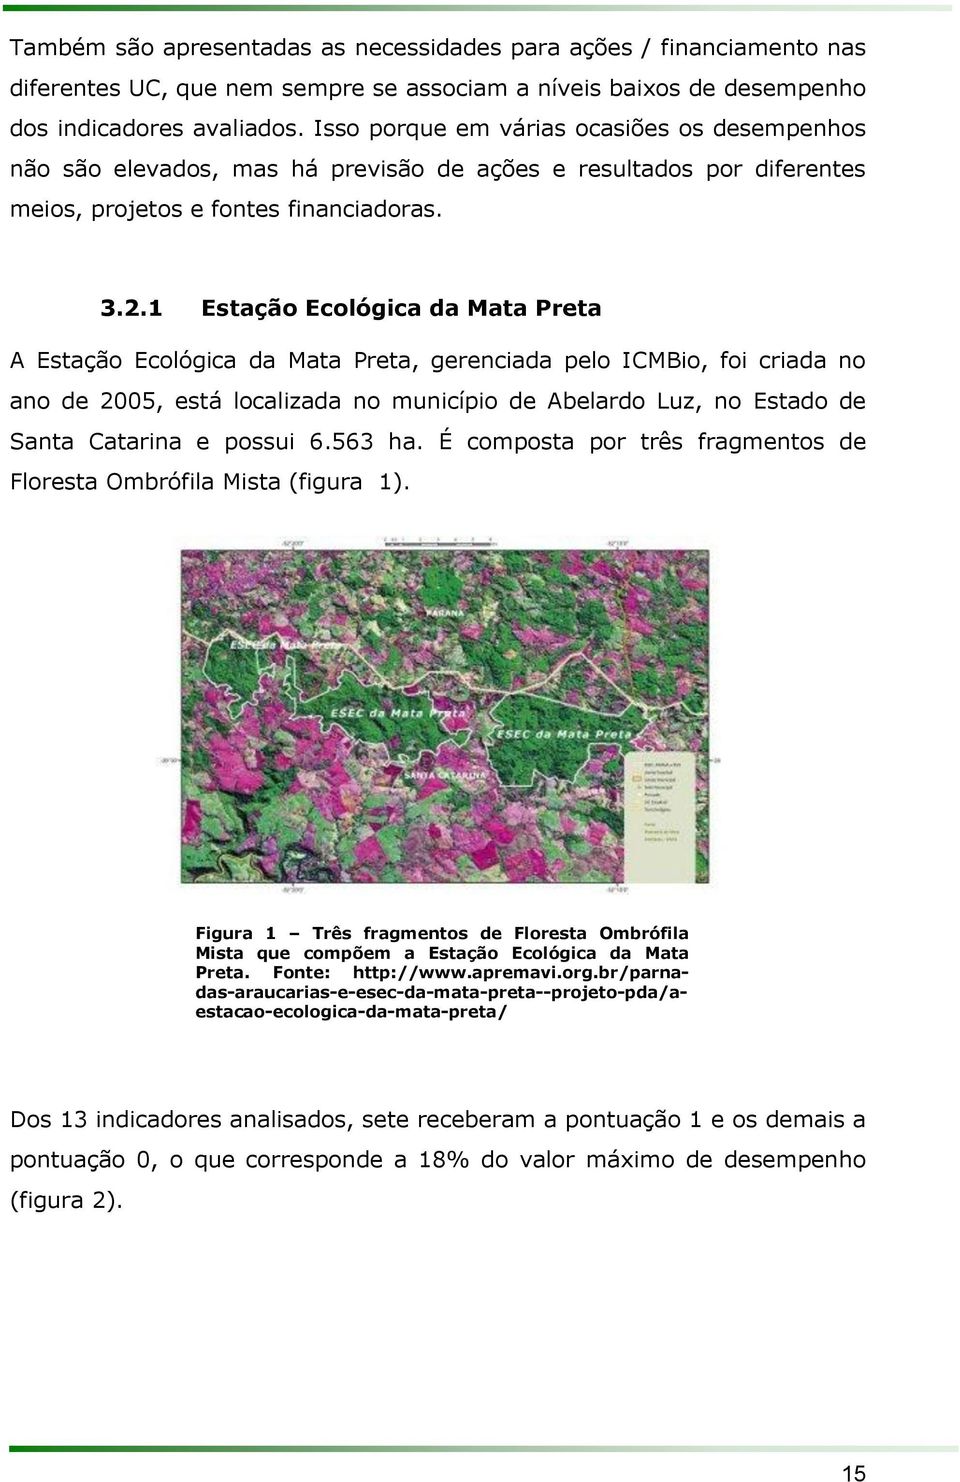 1 Estação Ecológica da Mata Preta A Estação Ecológica da Mata Preta, gerenciada pelo ICMBio, foi criada no ano de 2005, está localizada no município de Abelardo Luz, no Estado de Santa Catarina e